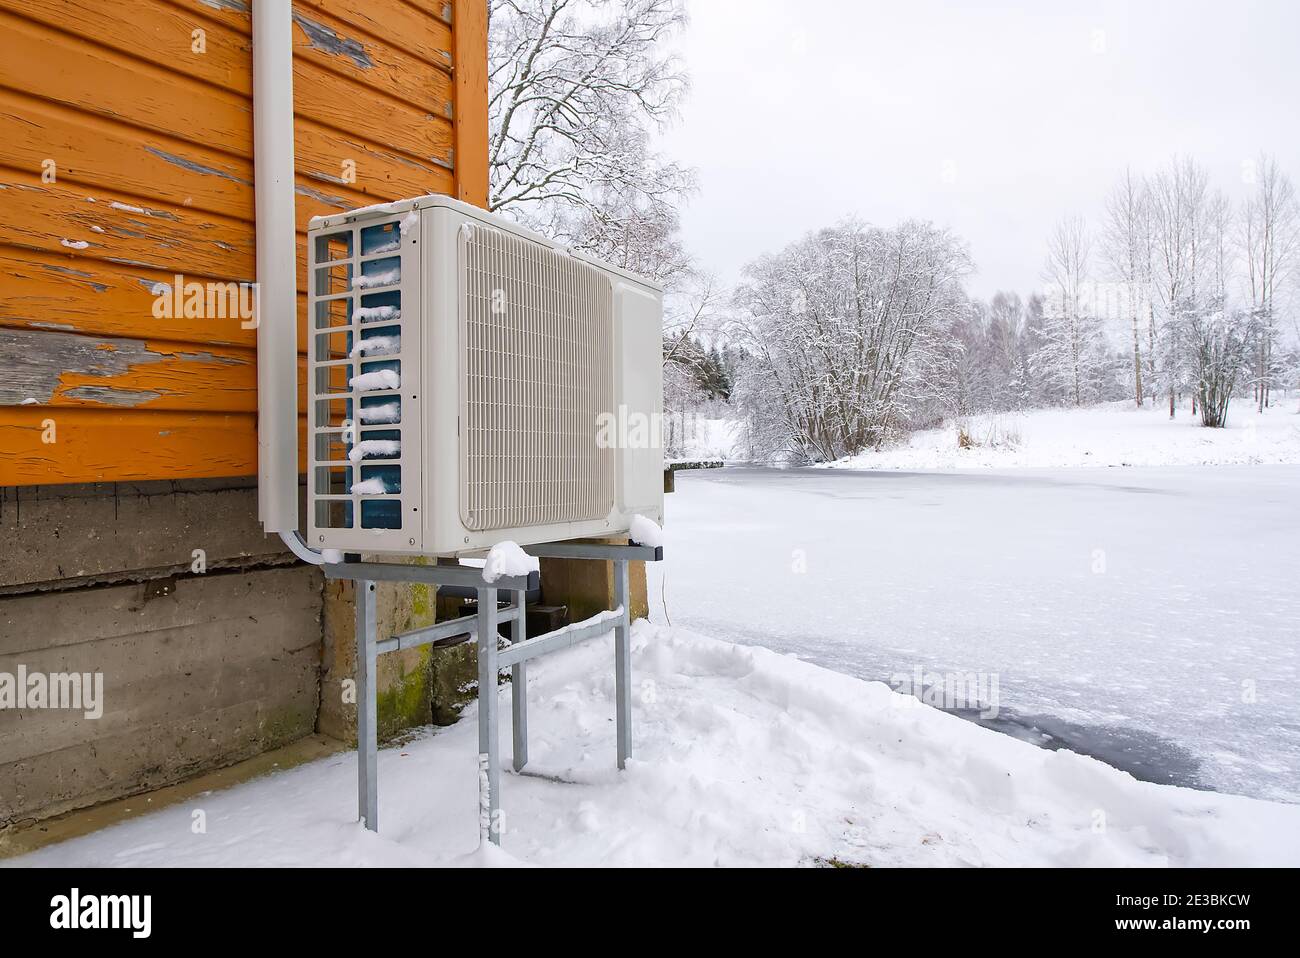 Pompa di calore aria-acqua nei pressi di una vecchia casa di legno in inverno. Pompa di calore aria-acqua primo piano Foto Stock